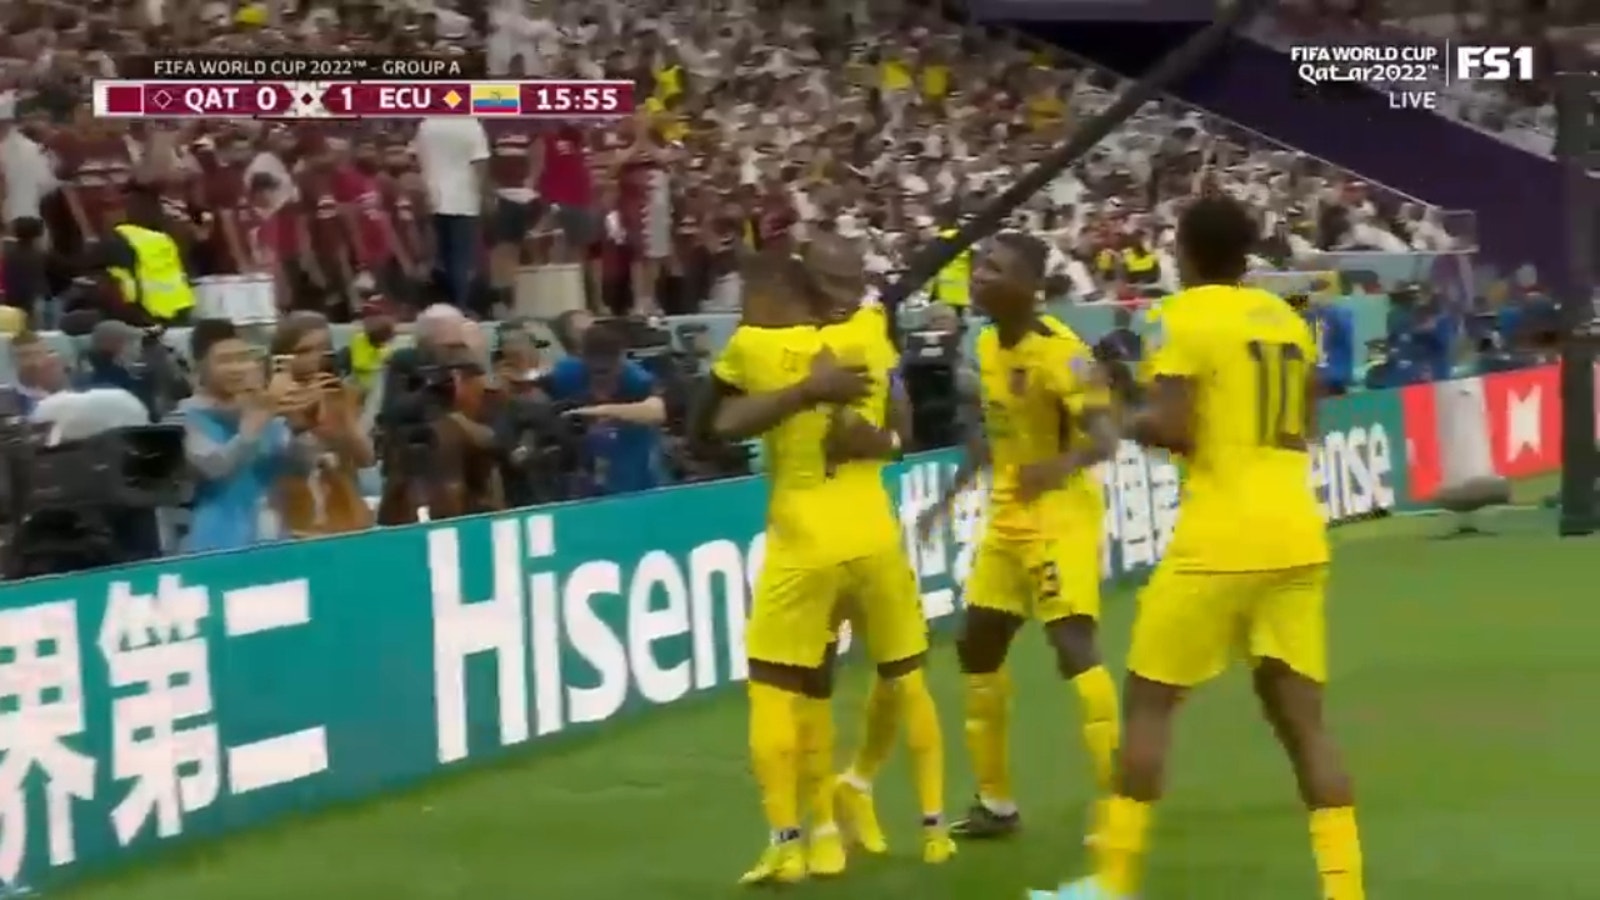 Ecuador's Enner Valencia draws a foul in the box and scores a PK goal vs. Qatar 